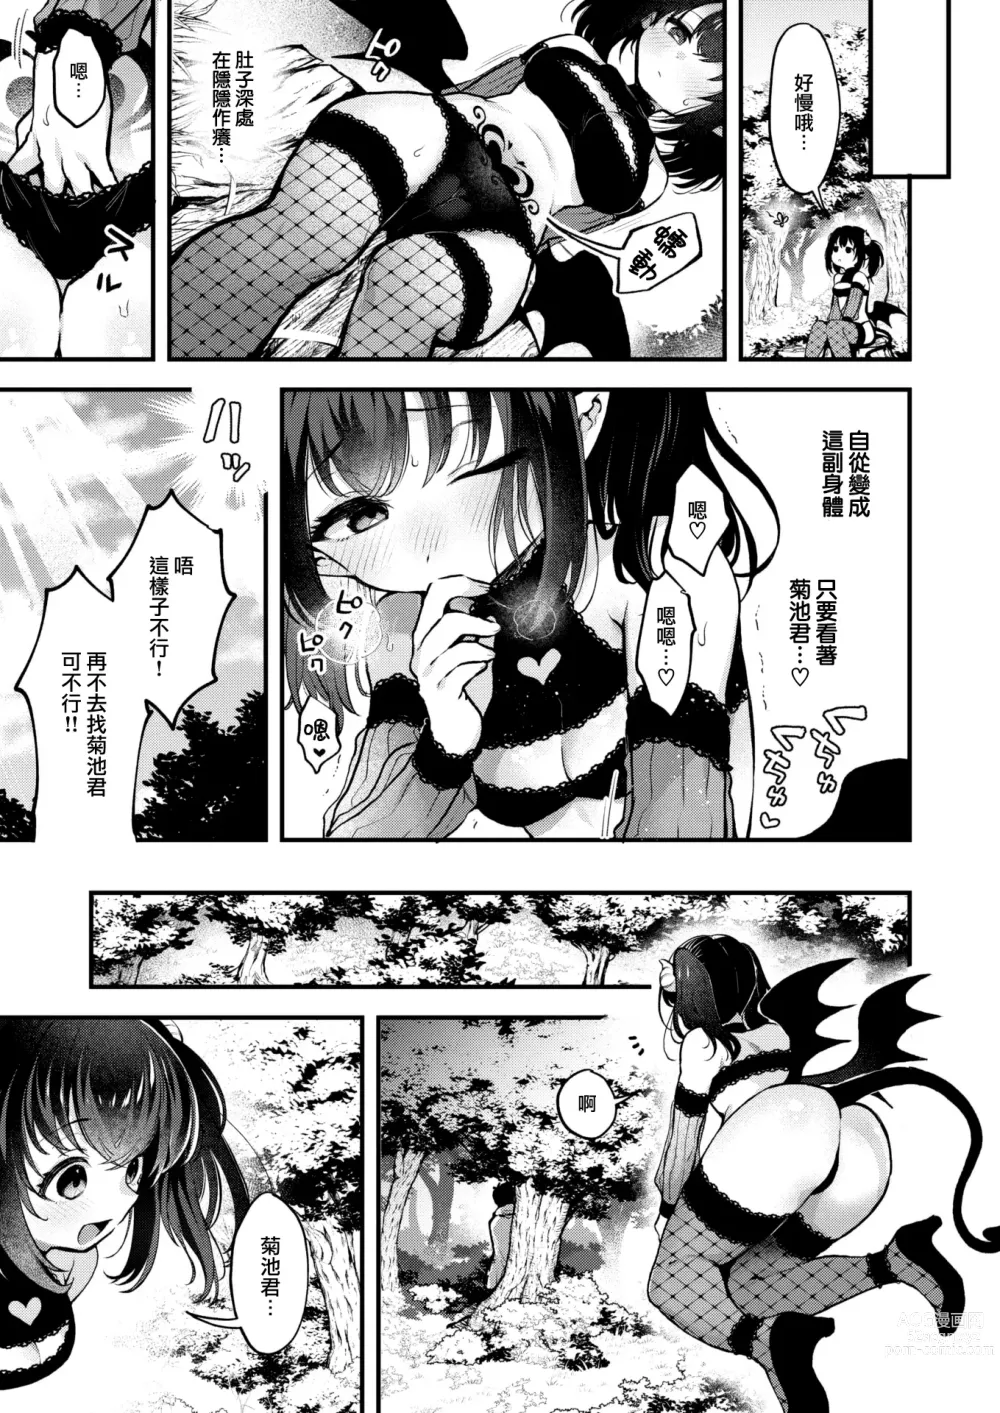 Page 10 of manga Changing!